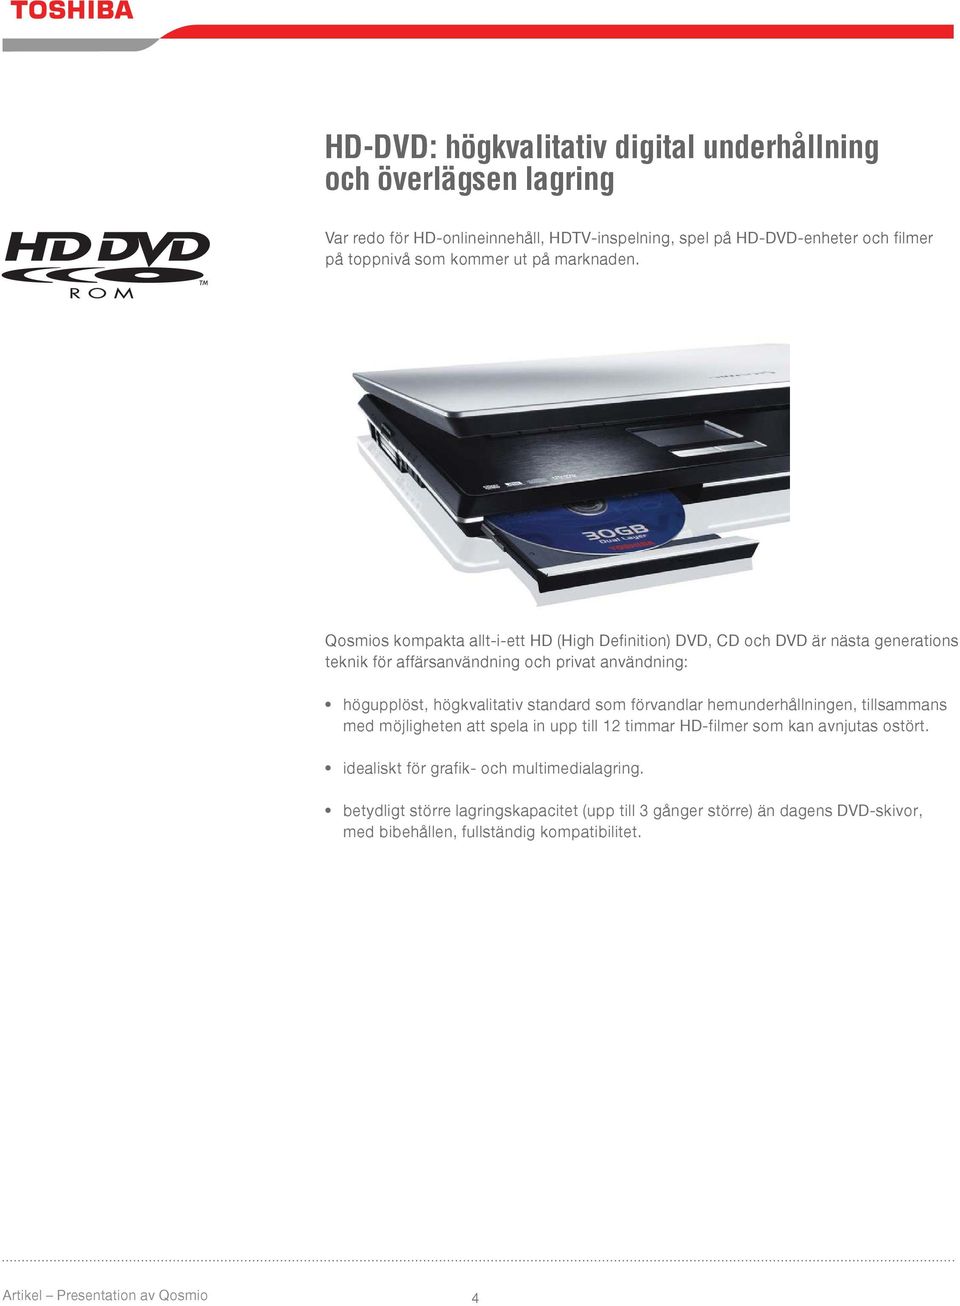 Qosmios kompakta allt-i-ett HD (High Definition) DVD, CD och DVD är nästa generations teknik för affärsanvändning och privat användning: högupplöst, högkvalitativ standard